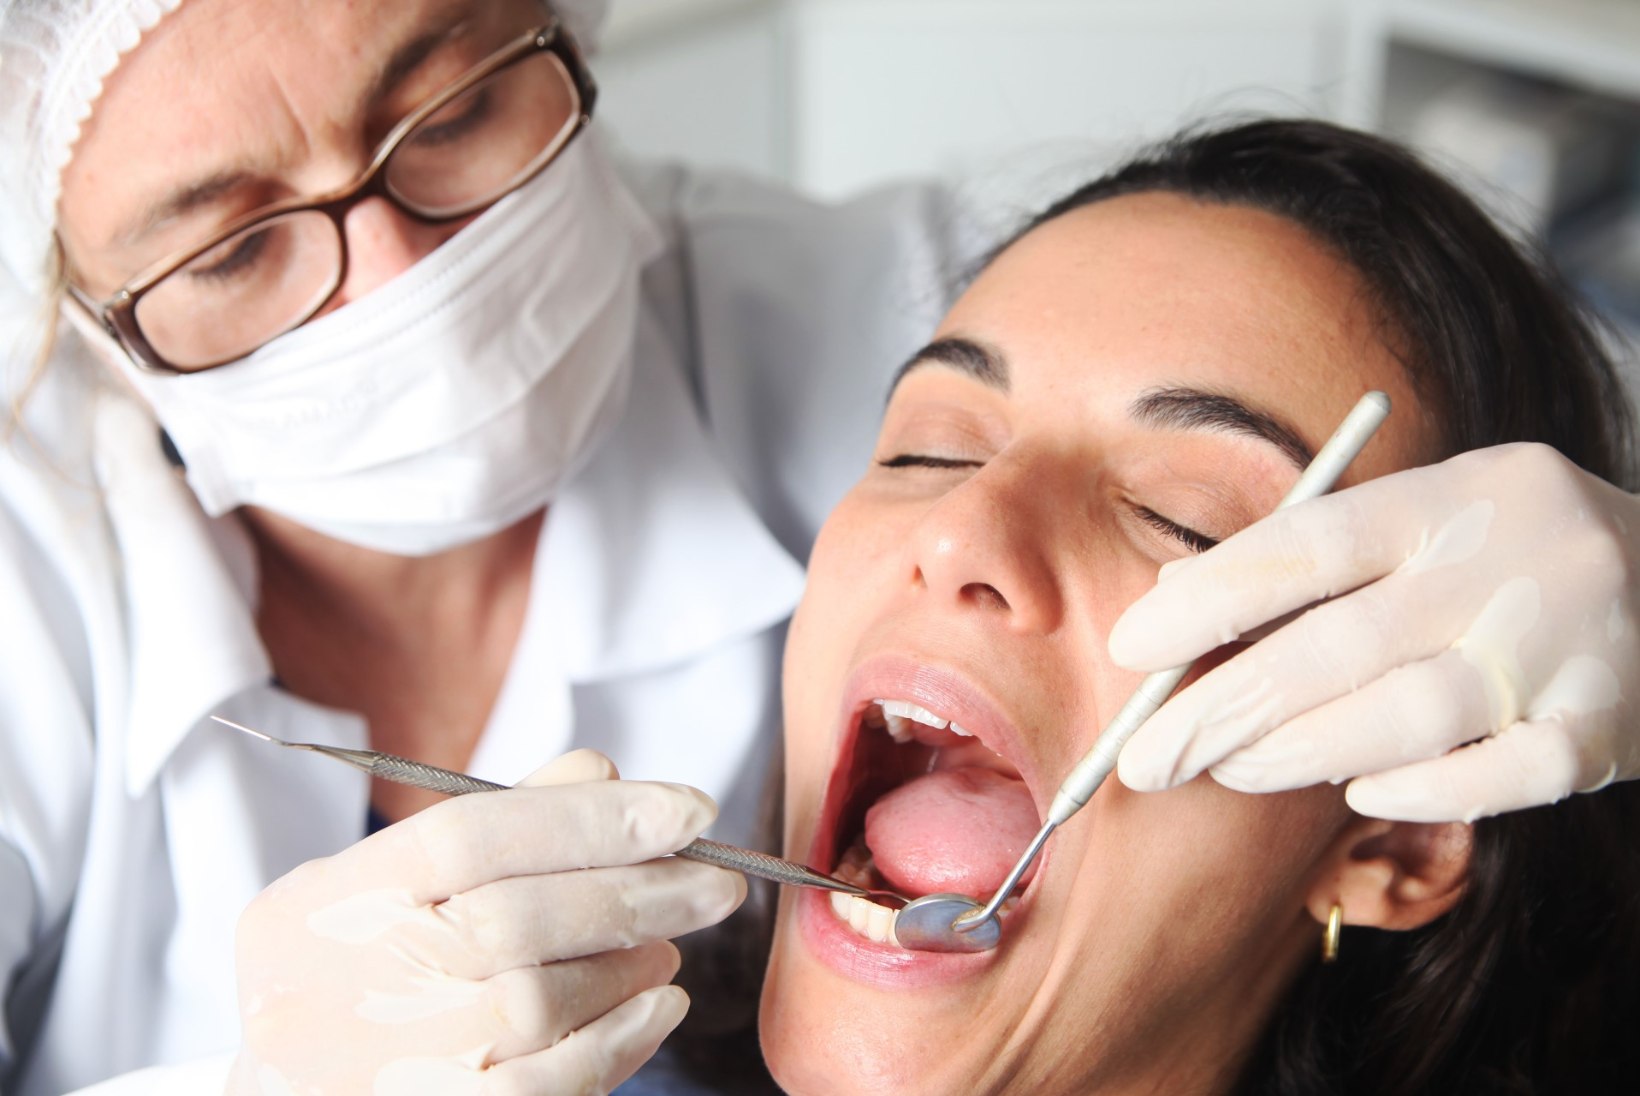 HAMBAID TÕMMATI ILMAASJATA VÄLJA: paljastati suur hambaarstide petuskeem